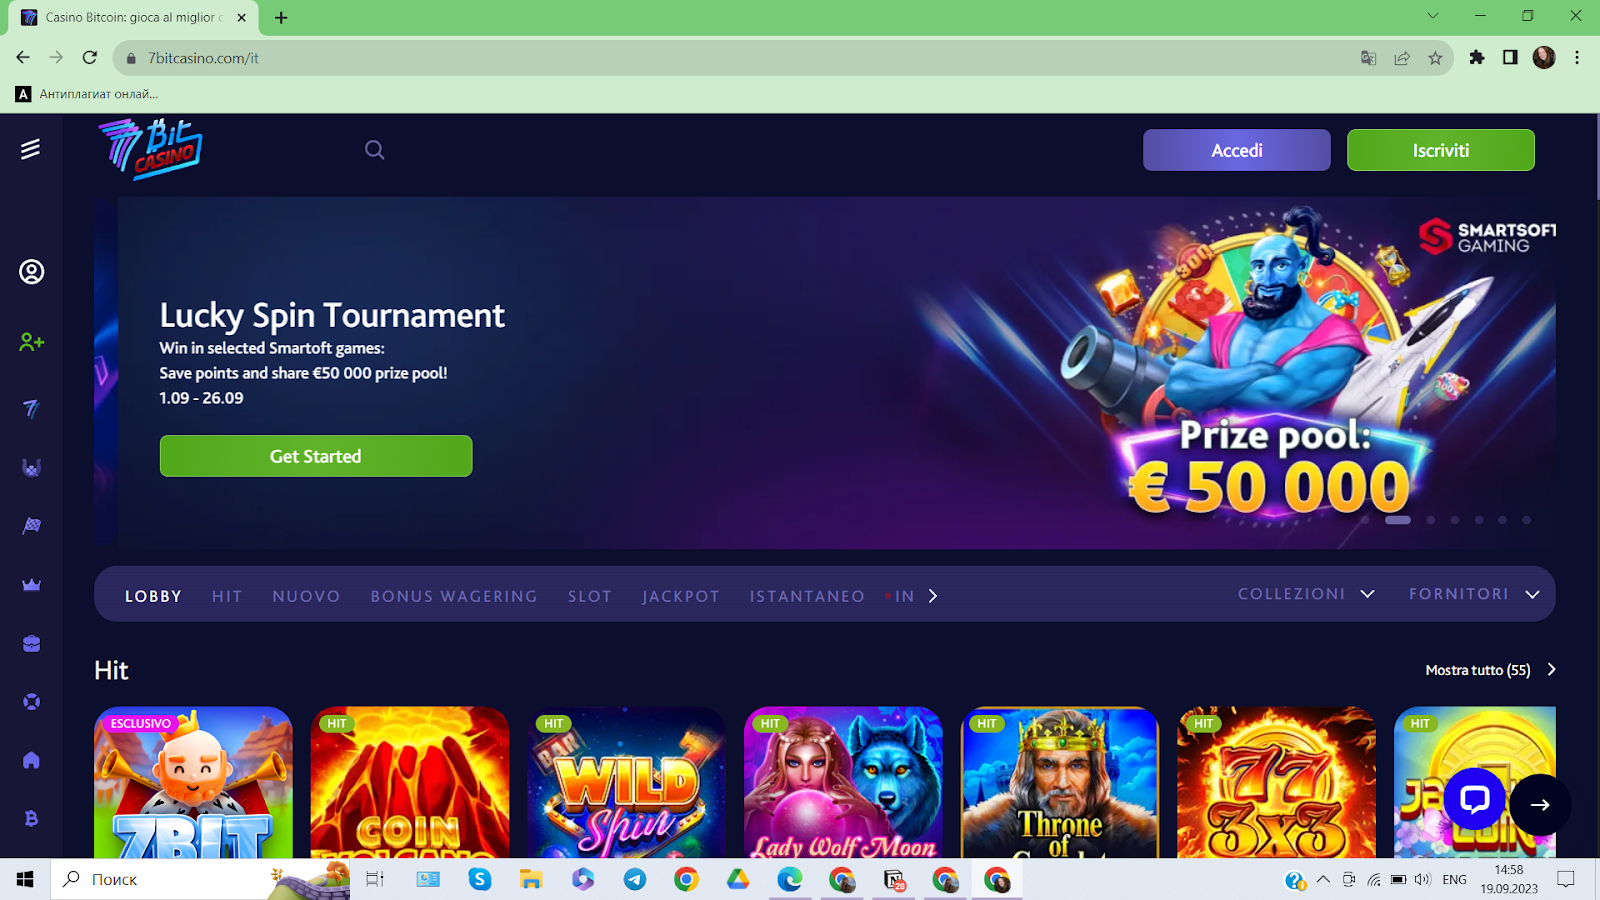 7Bit Casino homepage